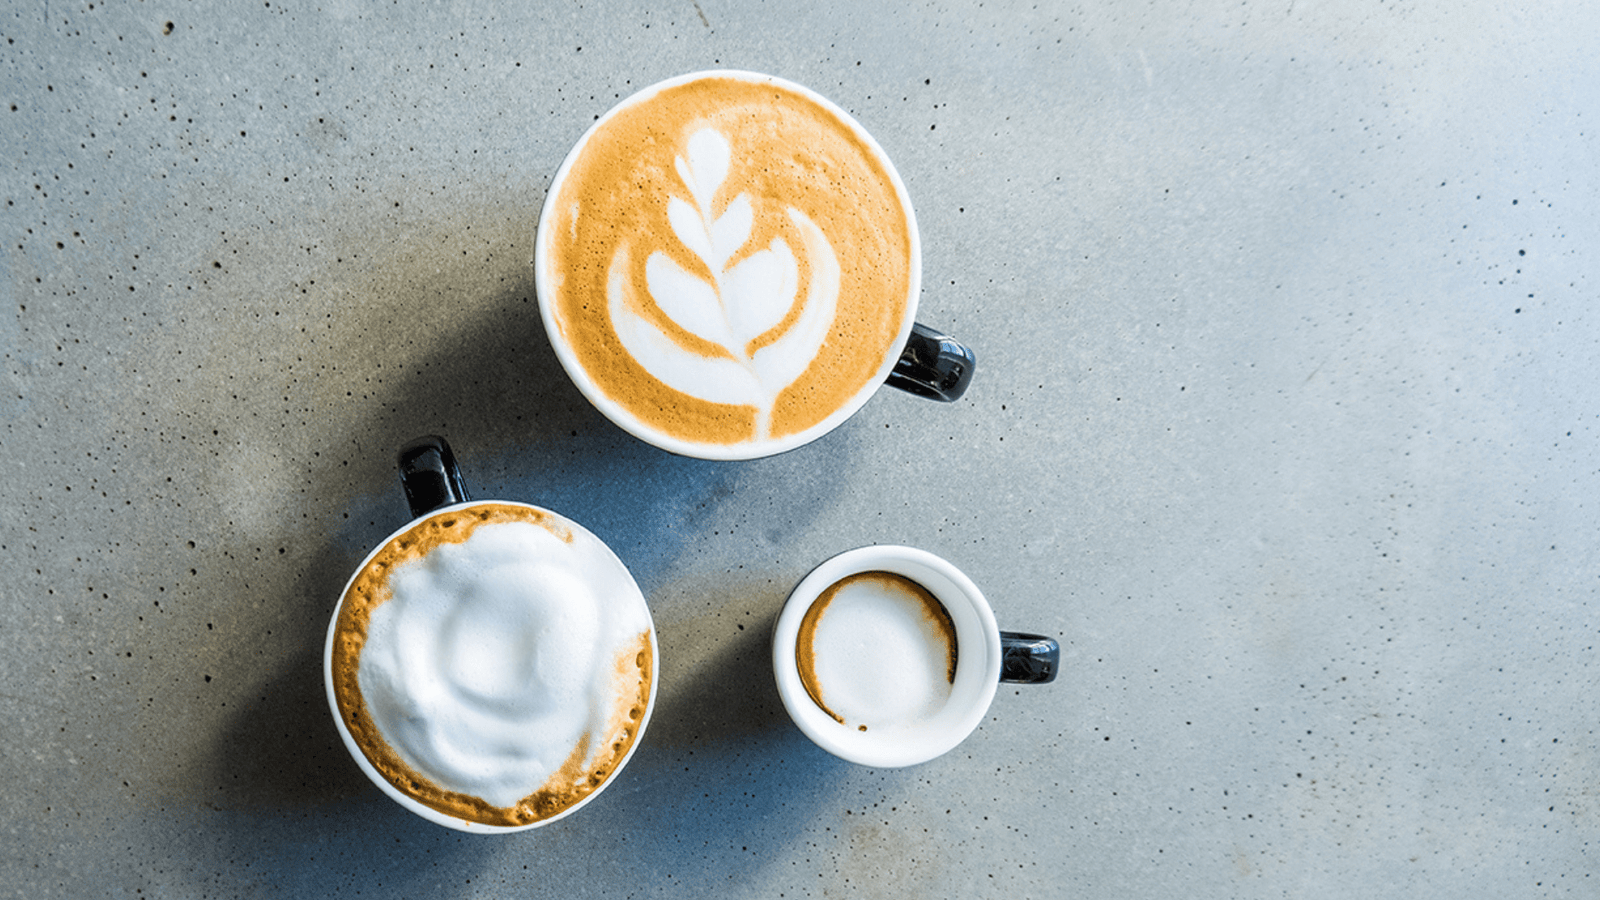 Comment commander son café comme un pro  Barista Microtorréfacteur - Café  Barista